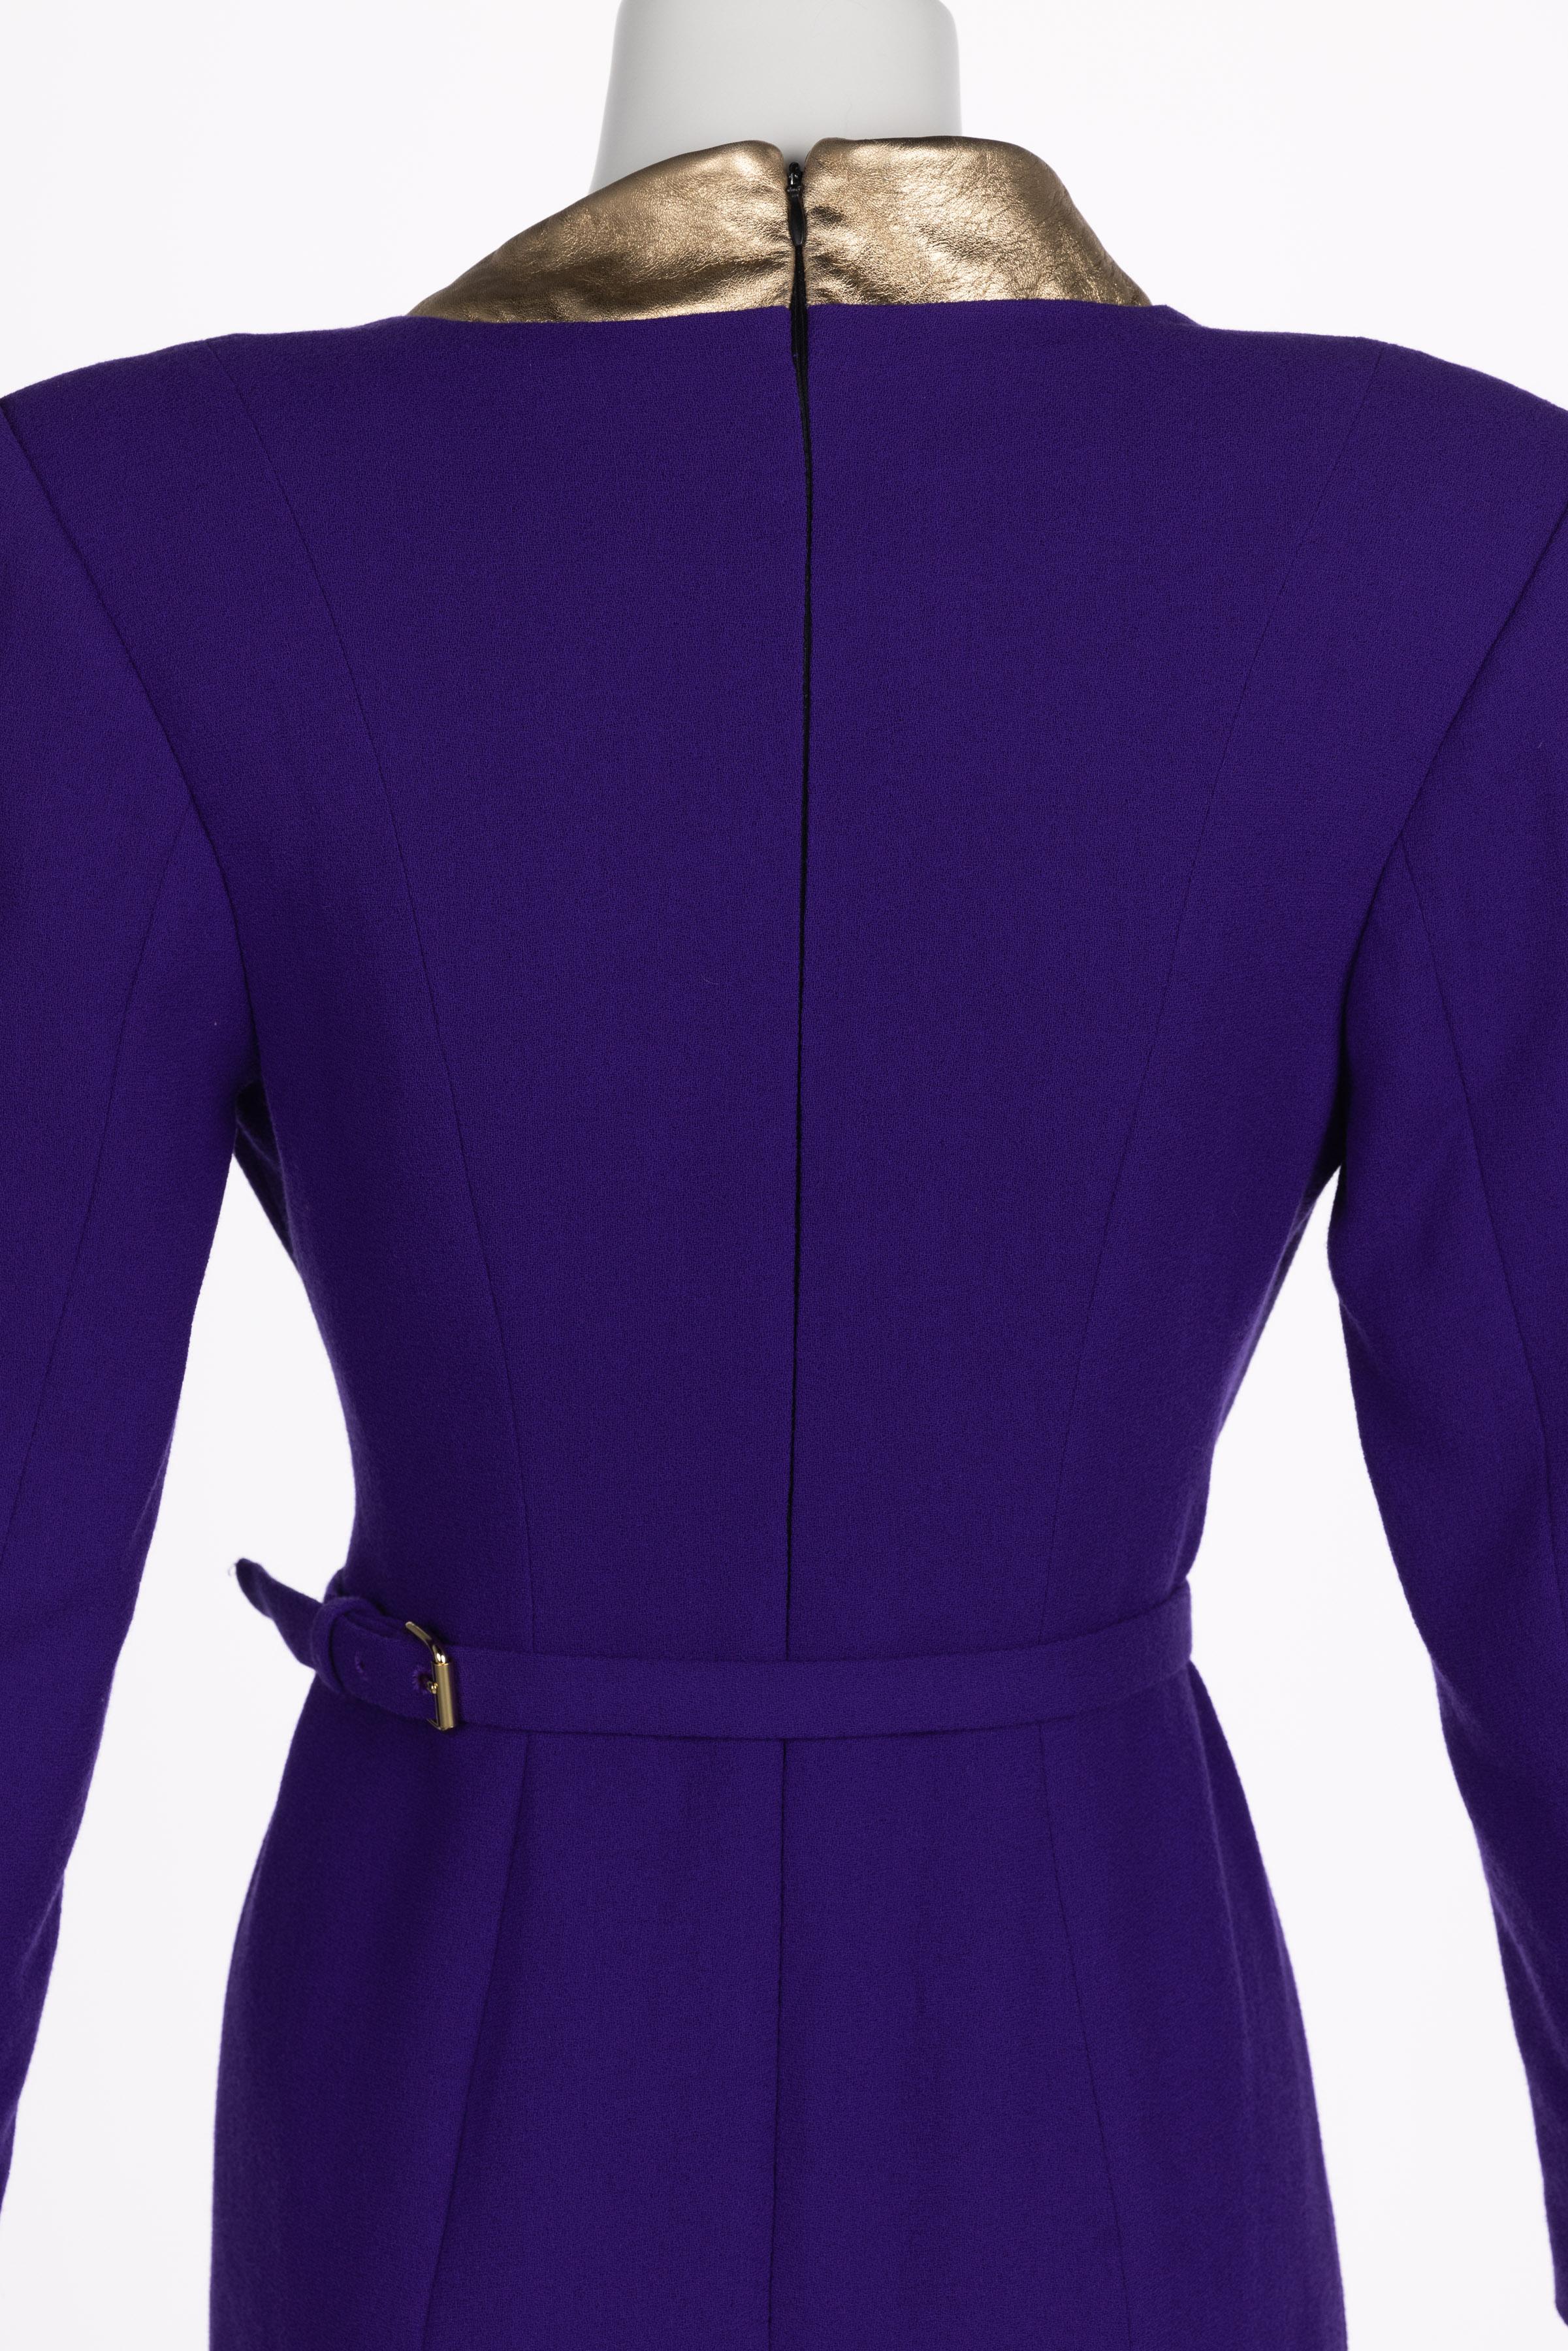 Ronald Van der kemp Haute Couture Dress, 2018 For Sale 8